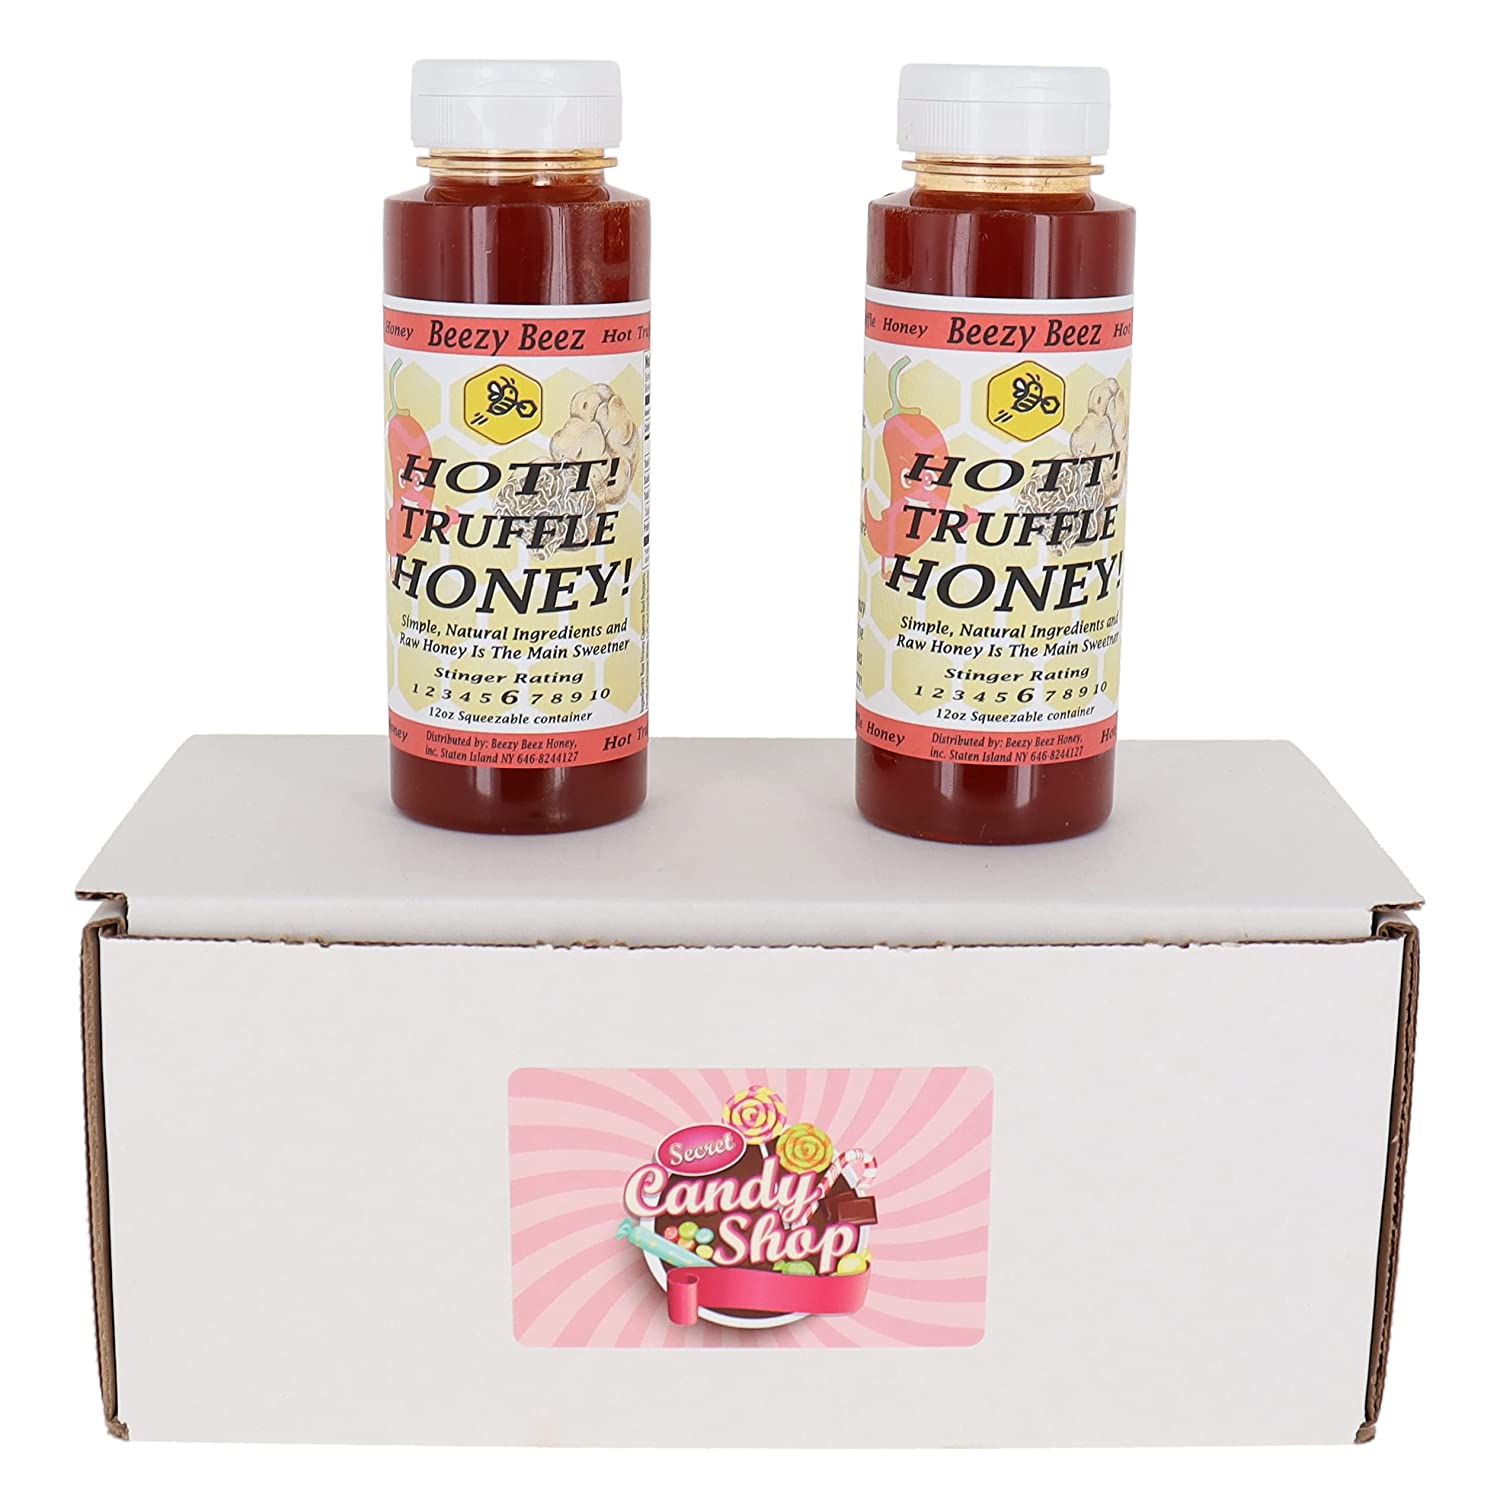 Beezy Beez Hot Honey 12oz Bottle (Spicy Hott Truffle Honey) (Pack of 2)